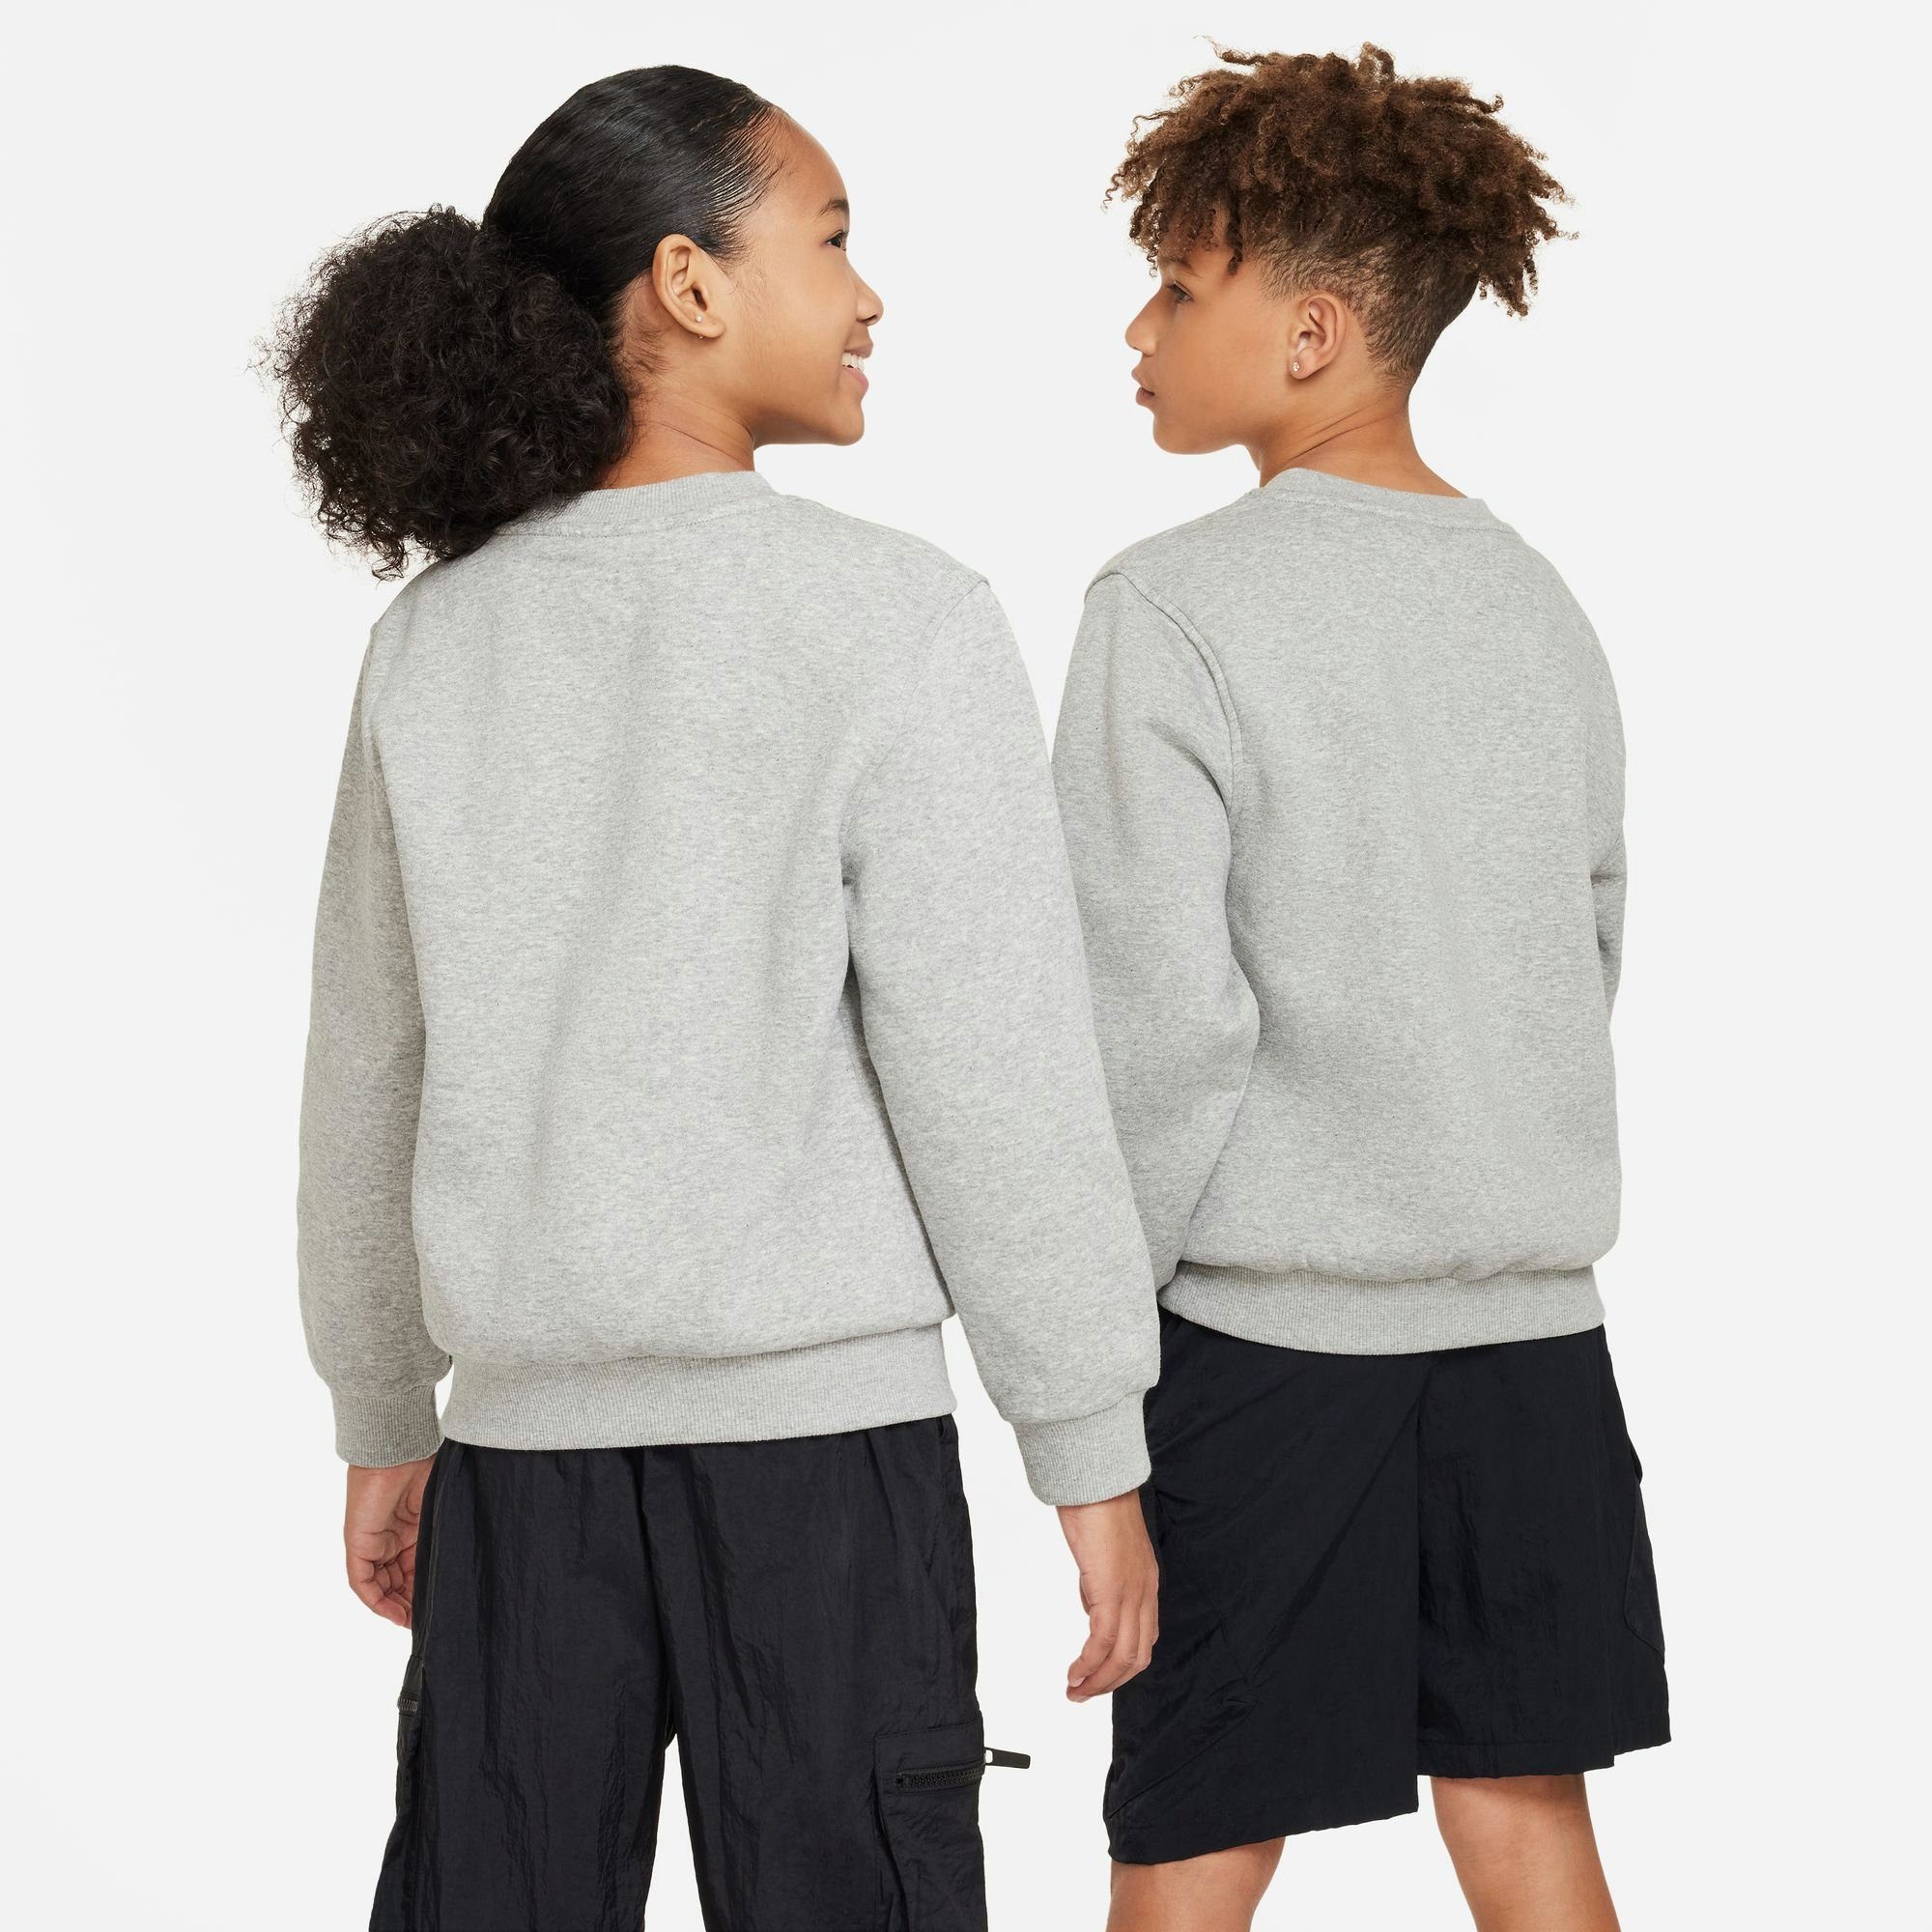 SWEATSHIRT KIDS' Sportswear GREY FLEECE CLUB Nike Sweatshirt HEATHER/WHITE BIG DK